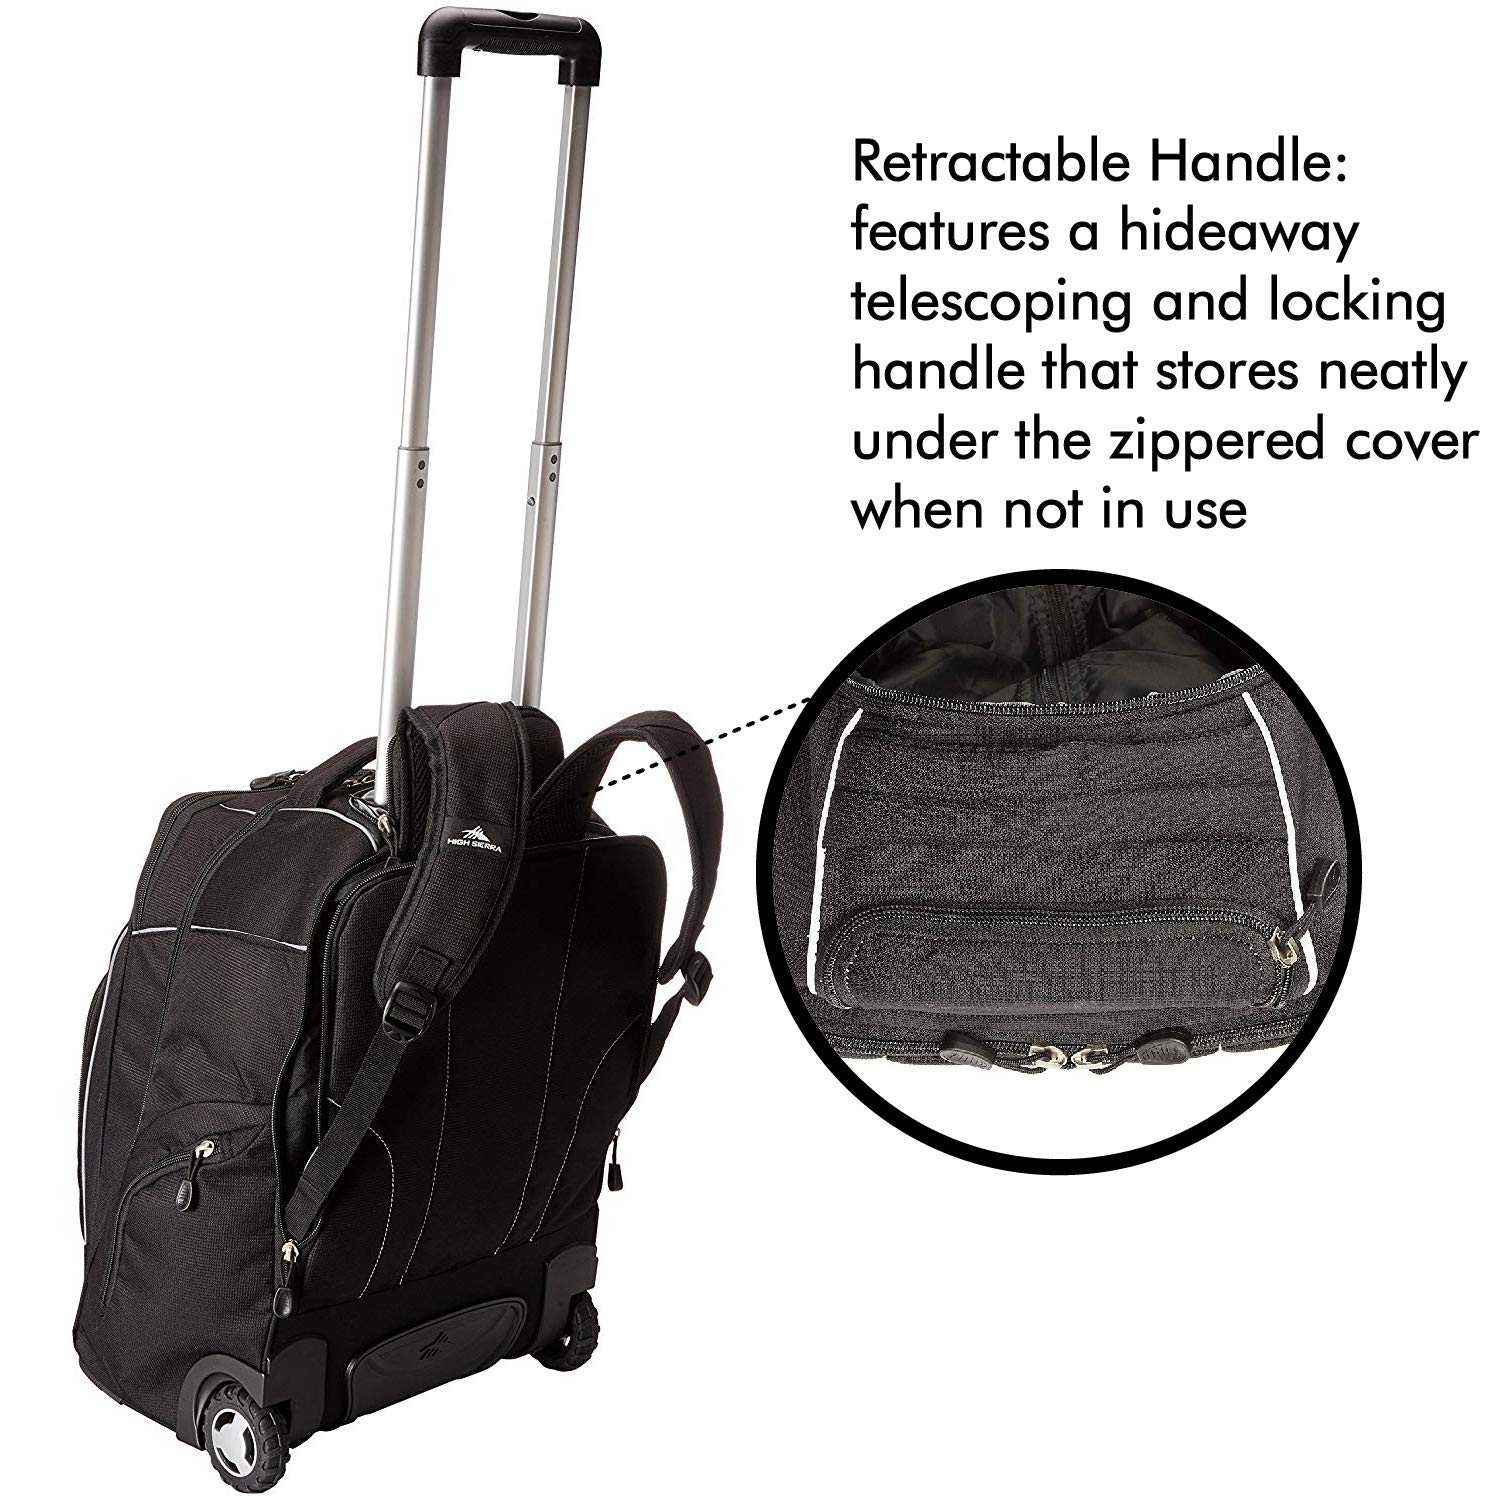 High Sierra Powerglide Wheeled Backpack, Black, One Size